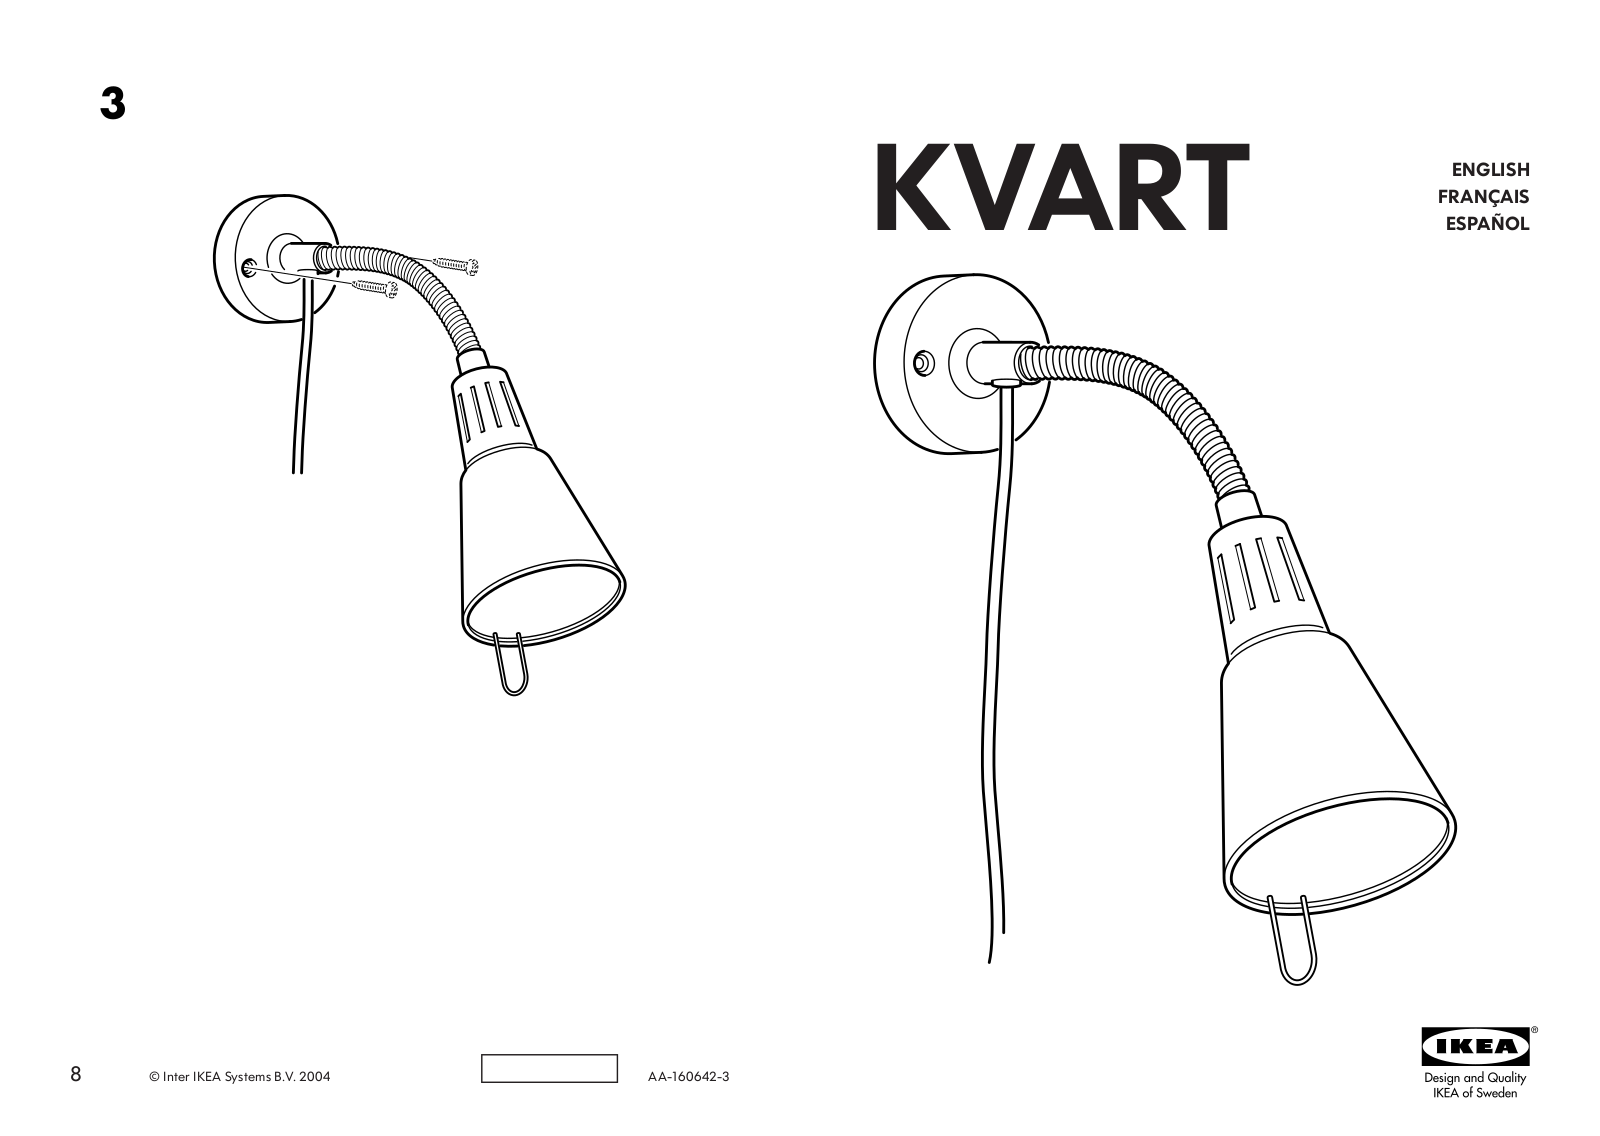 IKEA KVART WALL-CLAMP SPOTLIGHT Assembly Instruction